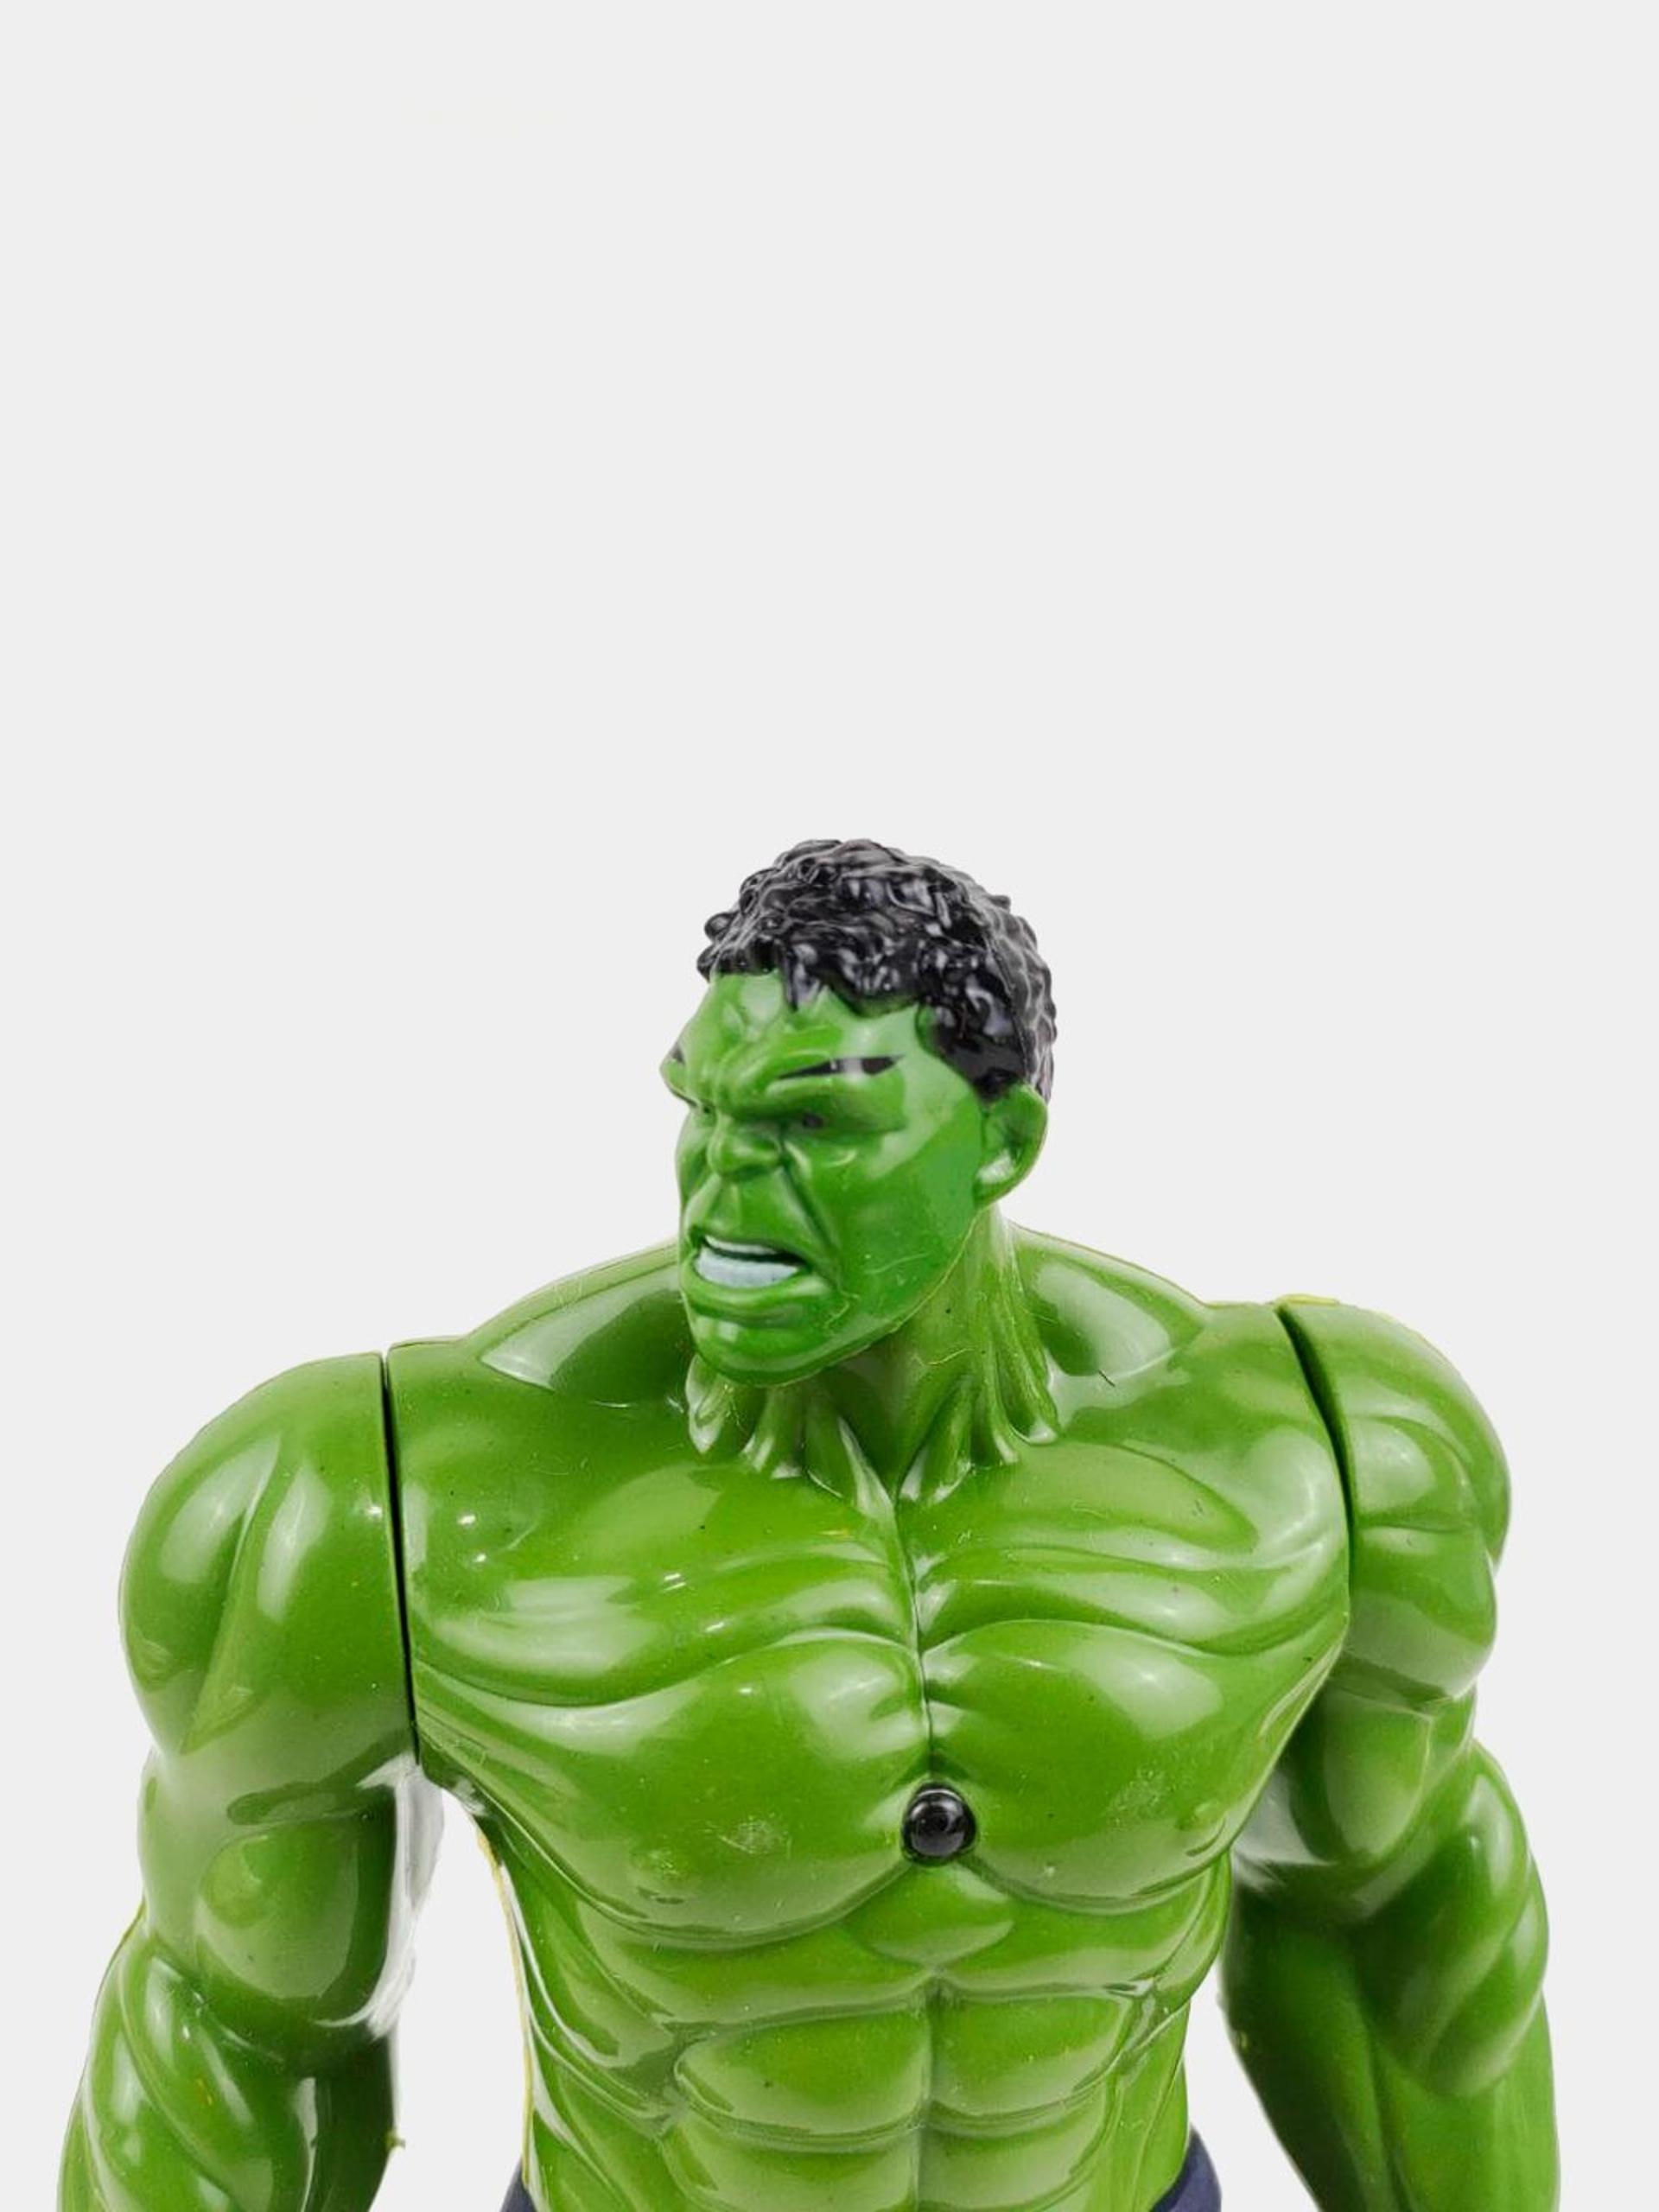 Товар - “Игрушка Халк, герой Hulk”